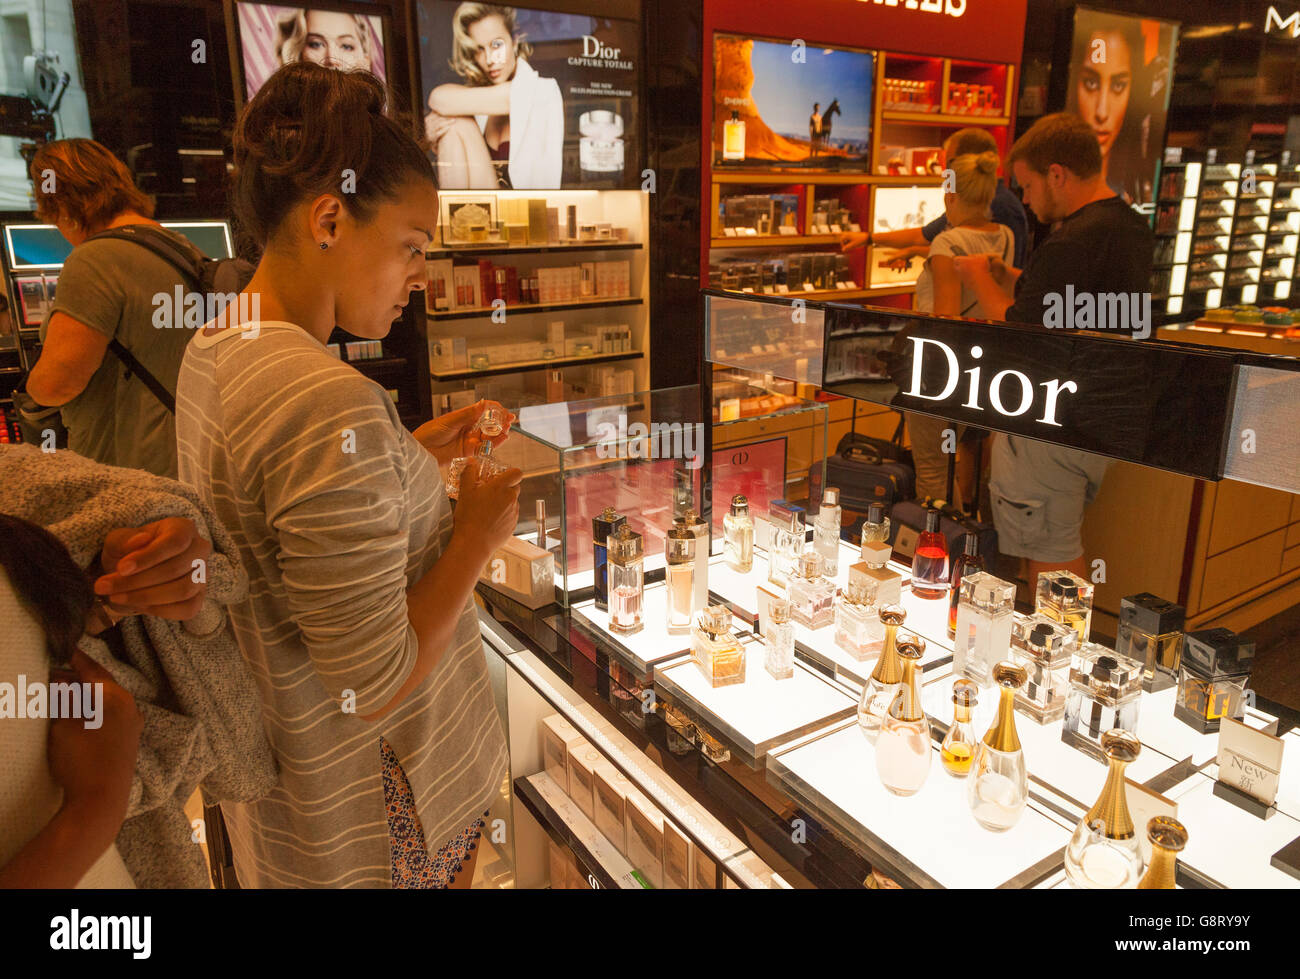 Une jeune femme magasiner pour le parfum Dior dans la boutique Duty Free de l'aéroport de Palma, Majorque Espagne Europe Banque D'Images